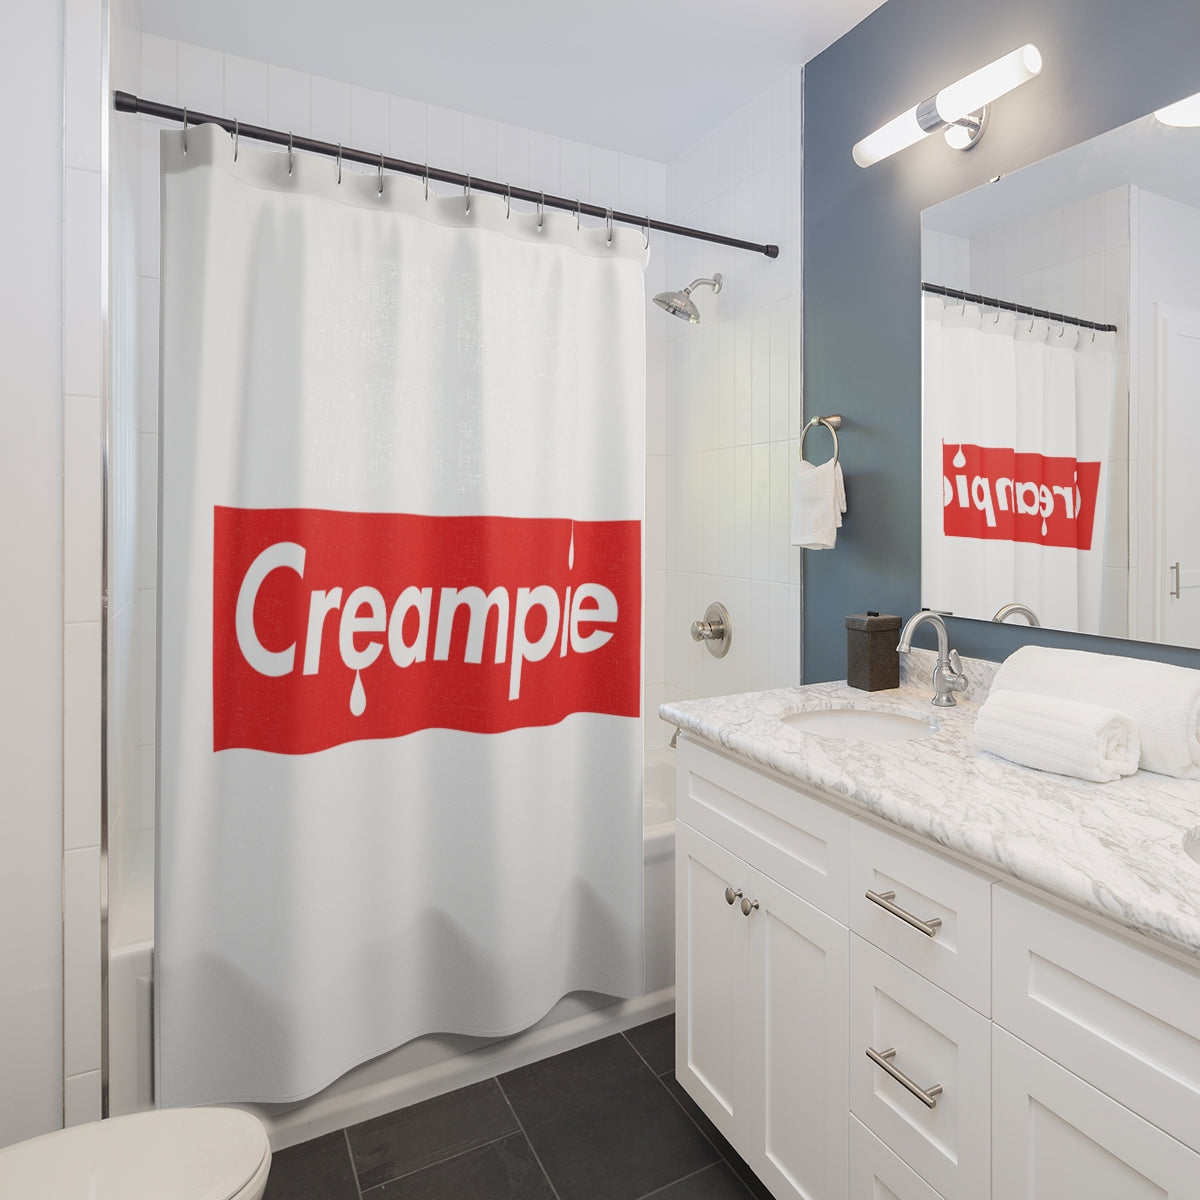 Creampie Shower Curtains